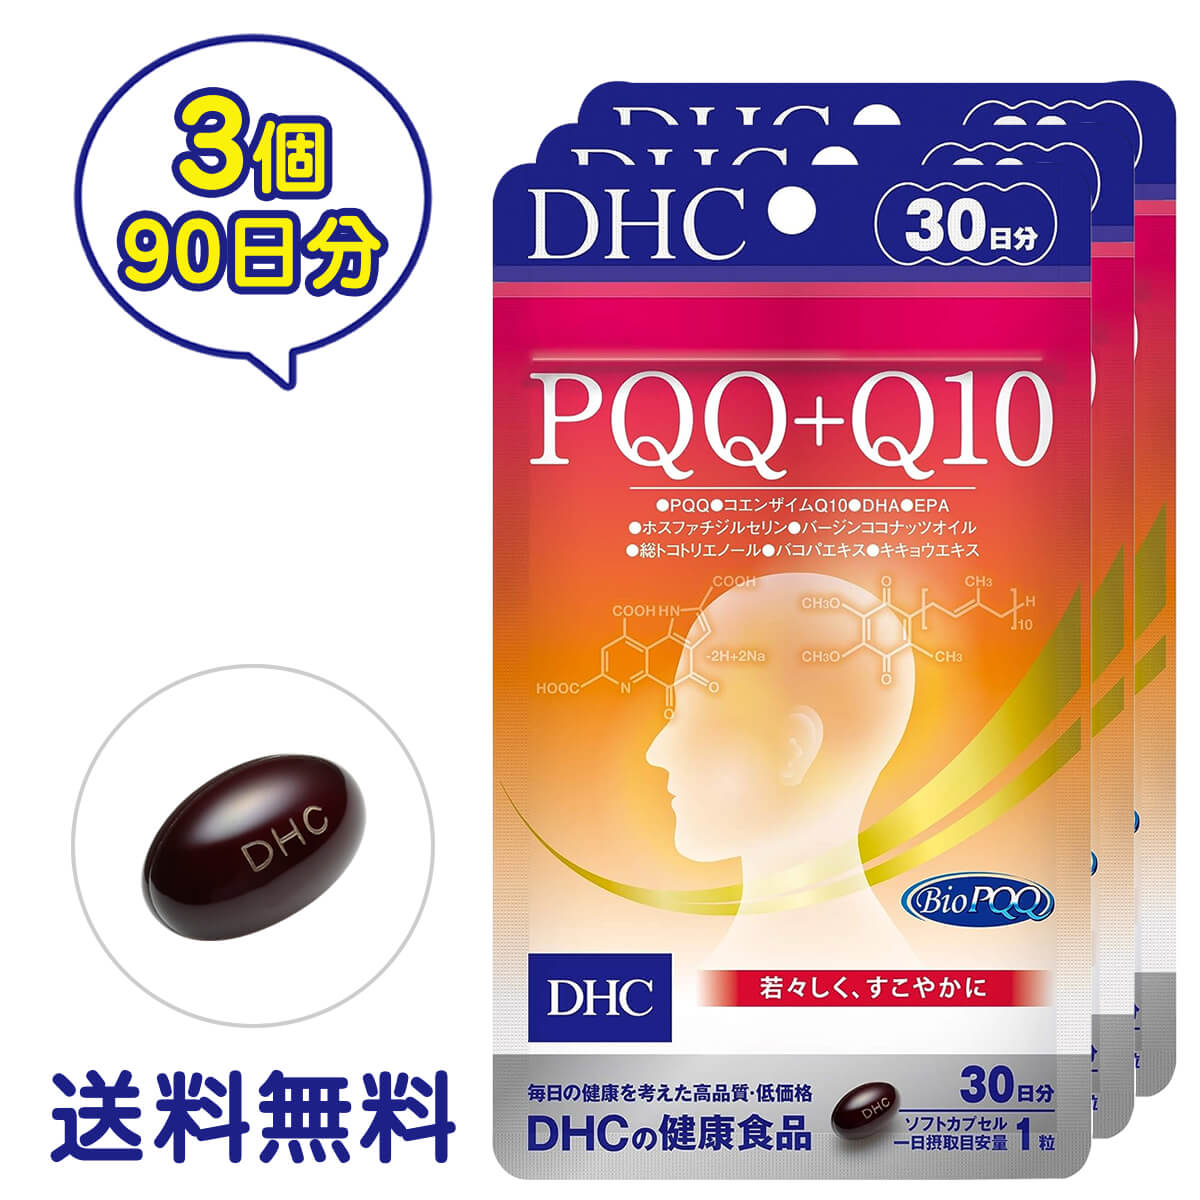 ■商品名 DHC PQQ＋Q10 30日分 3個セット ■商品詳細 日本初、新成分配合！すっきり冴えた若々しさに。 DHAやEPAなど、うっかりや記憶にアプローチする成分・食品はブレインフードともよばれます。そのうちのひとつでアメリカにおいて注目されているのがPQQです。 PQQ＋Q10はメイン成分として、ブレインフードとしてのほか、美容成分としても注目されているPQQを20mg、若々しさとPQQのサポート成分としてはたらく、コエンザイムQ10を35mg配合。 さらに、さえざえ成分として人気の高いDHAとEPA、落ち着き・記憶にアプローチするバコパなど7つの成分を配合したサプリメントです。年齢による記憶や集中の心配、最近うっかりが多い方、年齢に負けない若々しさを目指したい方におすすめです。 アメリカではFDA（アメリカ食品医薬品局）から健康食品素材として承認された2008年以降、PQQ配合のサプリメントが次々発売され、ブレインフードとして注目を集めています。日本ではDHCがはじめてサプリメントに配合しました。 PQQはビタミン様物質で、納豆やパセリなどに含まれます。しかし、含有量は非常に少なく、食事から摂るのは難しい成分です。 若々しさをサポートする成分としては、ビタミンC・ビタミンEよりも優れており、冴えや記憶に関わる、たんぱく質「NGF」を助けるはたらきがあります。 コエンザイムQ10と併せて摂ることで、より高いパワーが期待されます。 PQQ 冴えにアプローチし、年齢に負けない若々しさに コエンザイムQ10 体の中から若々しく、美しく。強いバリアパワーとエネルギーづくりに欠かせない成分。 DHA 記憶力や集中力をサポート バコパエキス末 心を落ちつかせ、記憶力にアプローチするとされる、インド伝承のハーブ。 ココナッツオイル 冴えをバックアップ EPA めぐりサラサラ ホスファチジルセリン さえざえを応援 トコトリエノール 若々しさに役立つ ※水またはぬるま湯でお召し上がりください。 ■成分・原材料 【名称】ピロロキノリンキノン二ナトリウム塩含有食品 【原材料名】精製魚油（国内製造）、コエンザイムQ10、ピロロキノリンキノン二ナトリウム塩（PQQ）、バコパエキス末、ココナッツオイル、キキョウエキス末、ホスファチジルセリン含有大豆レシチン抽出物（大豆を含む）/ゼラチン、グリセリン、グリセリン脂肪酸エステル、ミツロウ、トコトリエノール、カラメル色素 【内容量】 14.3g［1粒重量479mg（1粒内容量314mg）× 30粒］× 3 【栄養成分表示［1粒479mgあたり］】 熱量3.2kcal、たんぱく質0.12g、脂質0.28g、炭水化物0.04g、食塩相当量0.009g、PQQ 20mg、コエンザイムQ10 35mg、バコパエキス末10mg（バコサイド50%）、総トコトリエノール9.8mg、バージンココナッツオイル5mg、キキョウエキス末5mg、ホスファチジルセリン1.5mg、DHA 64mg、EPA 13mg ■保存方法について ・直射日光、高温多湿な場所をさけて保存してください。 ・お子さまの手の届かないところで保管してください。 ・開封後はしっかり開封口を閉め、なるべく早くお召し上がりください。 ※モニターの発色具合によって実際のものと色が異なる場合があります